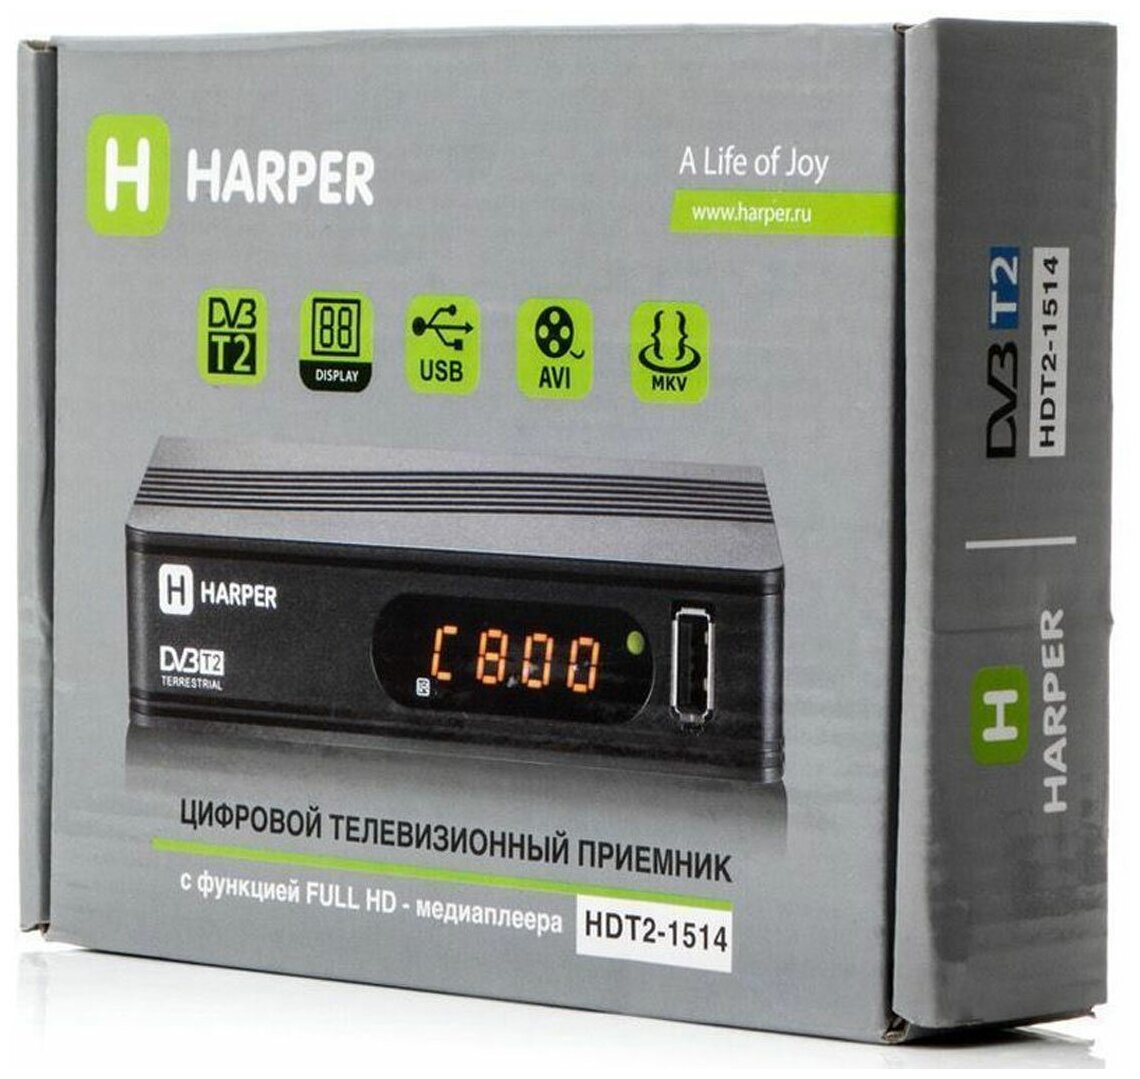 ТВ-тюнер HARPER HDT2-1514